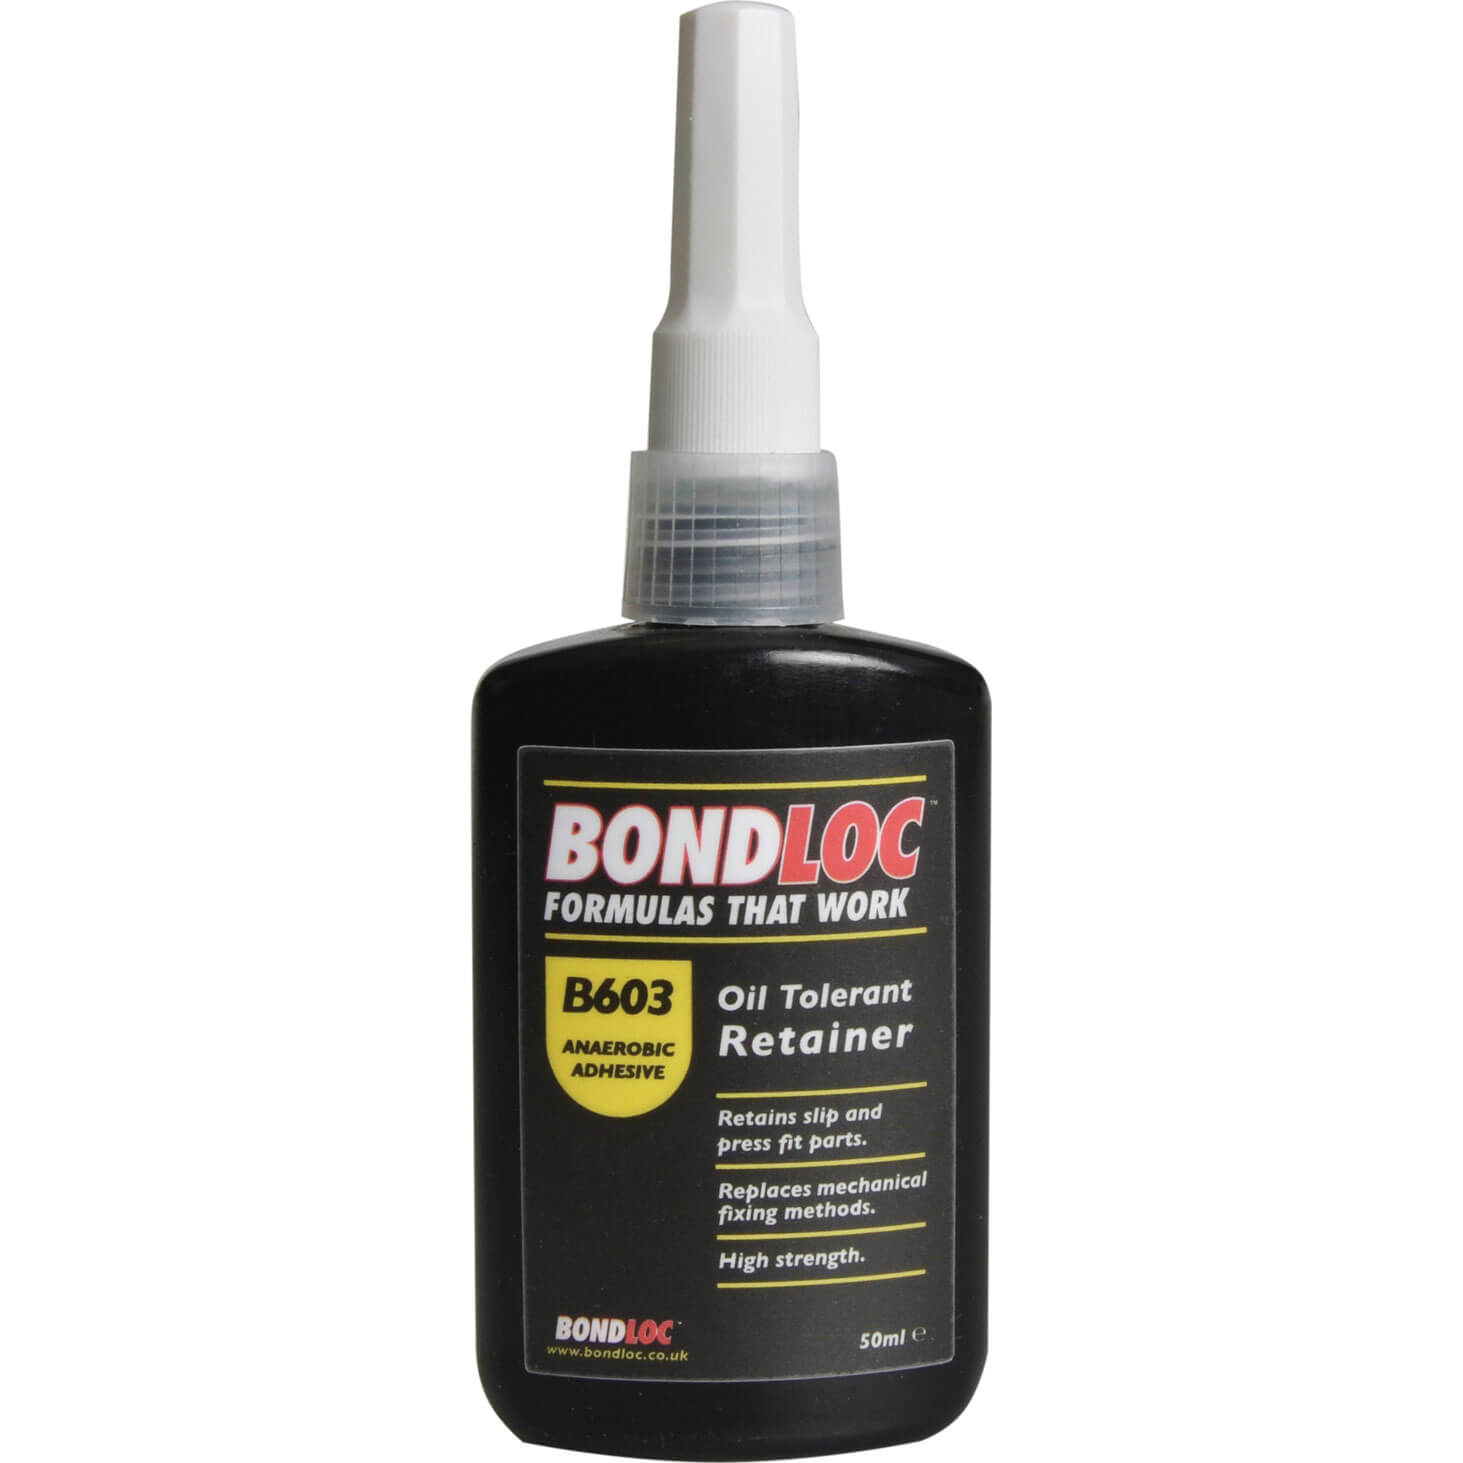 Image of Bondloc B603 Oil Tolerant Retainer Compound 50ml